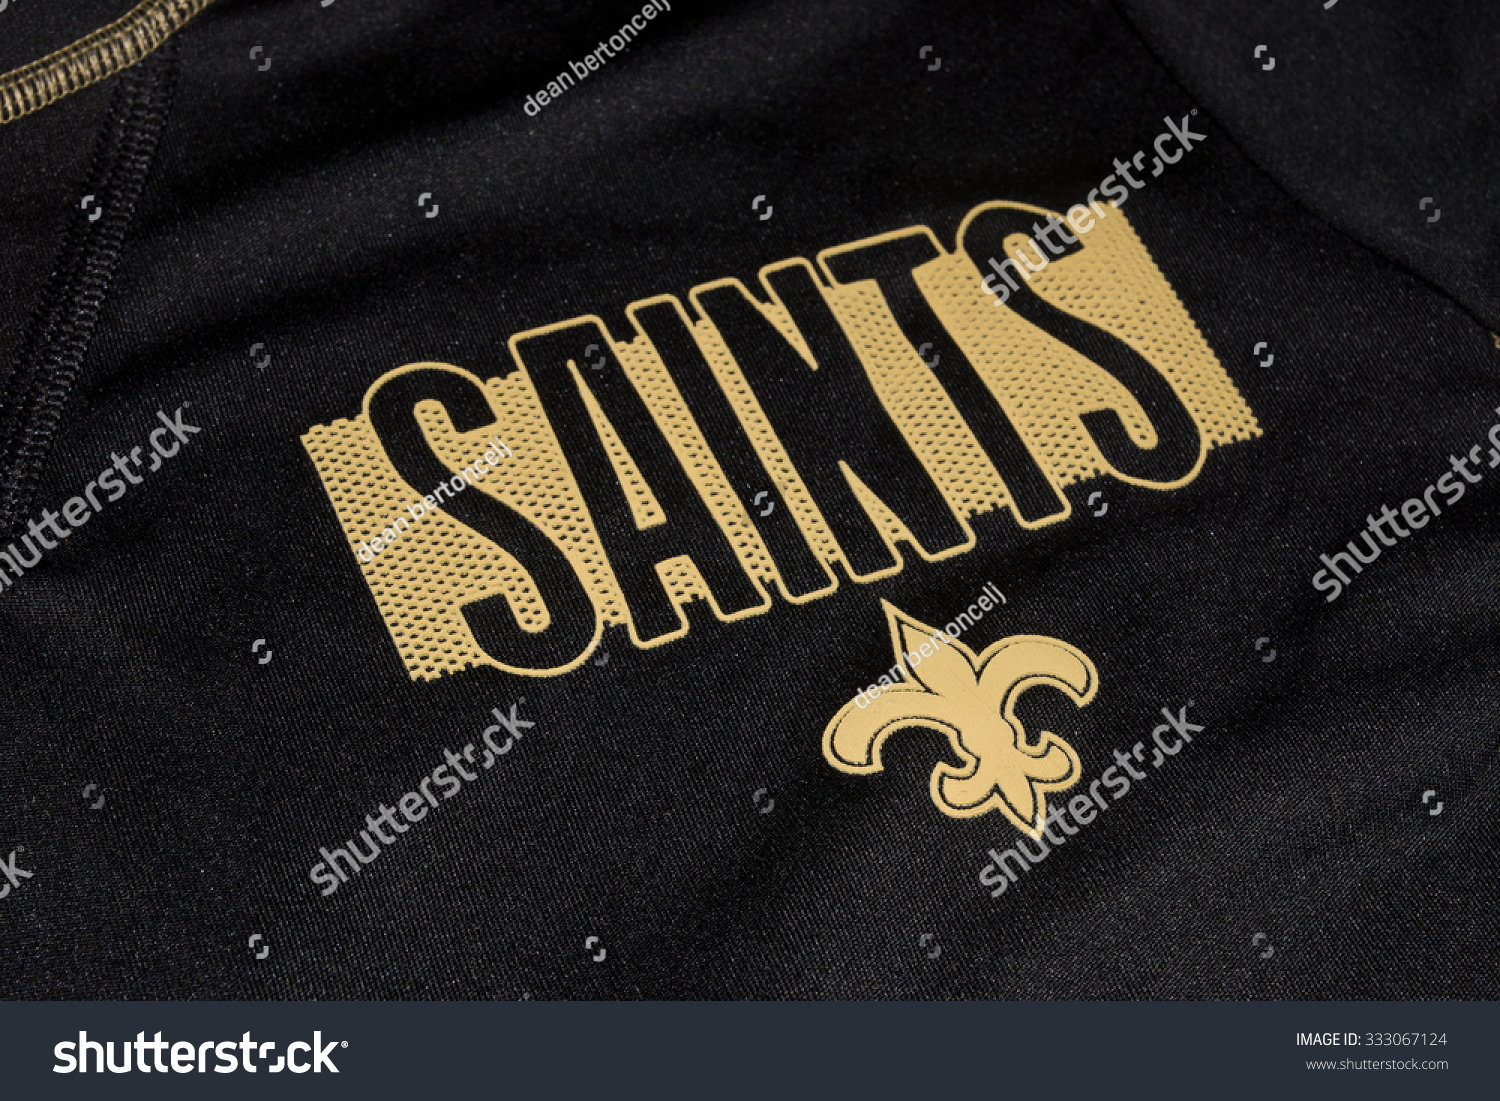 new orleans saints jersey 2015